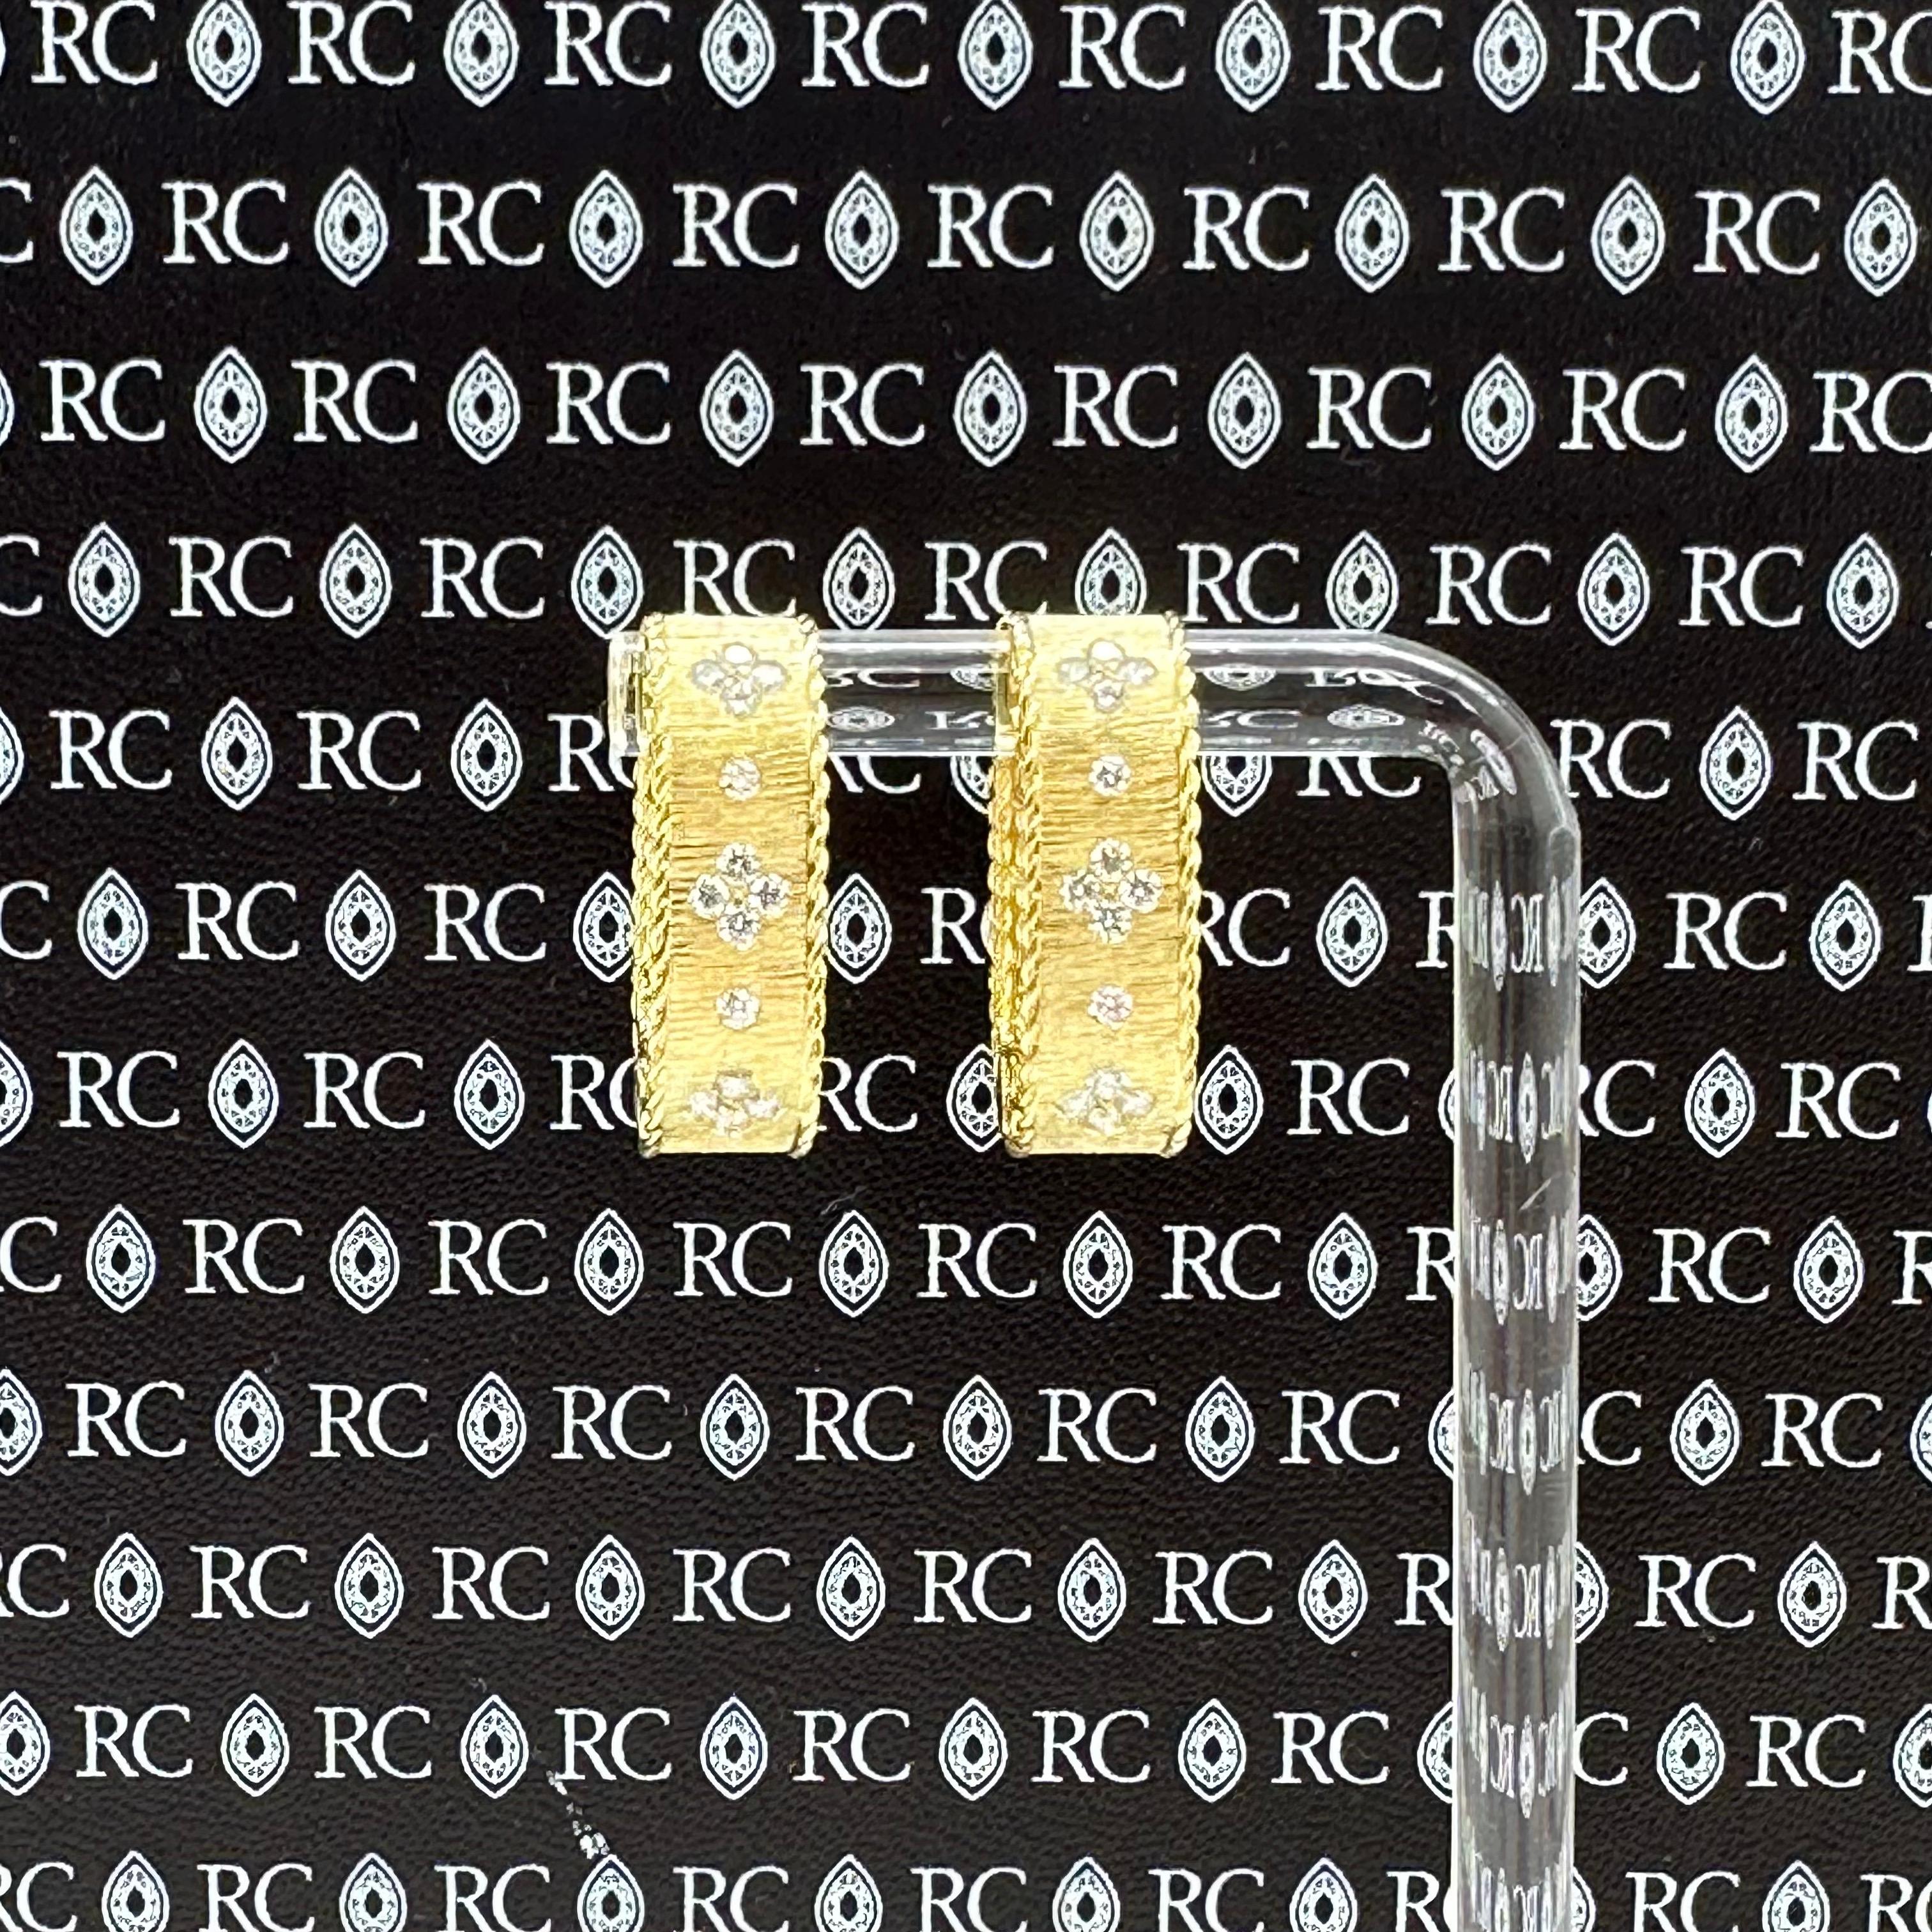 Roberto Coin Boucles d'oreilles carrées à diamants princesses Satinées 
Le style :  Cerceau
Numéro de référence :  8883399AXERX
Métal :  Or jaune 18Kt
Taille / Mesures :  20 mm de longueur - 5 mm de largeur
TCW :  0,38 tcw
Le diamant principal :  28